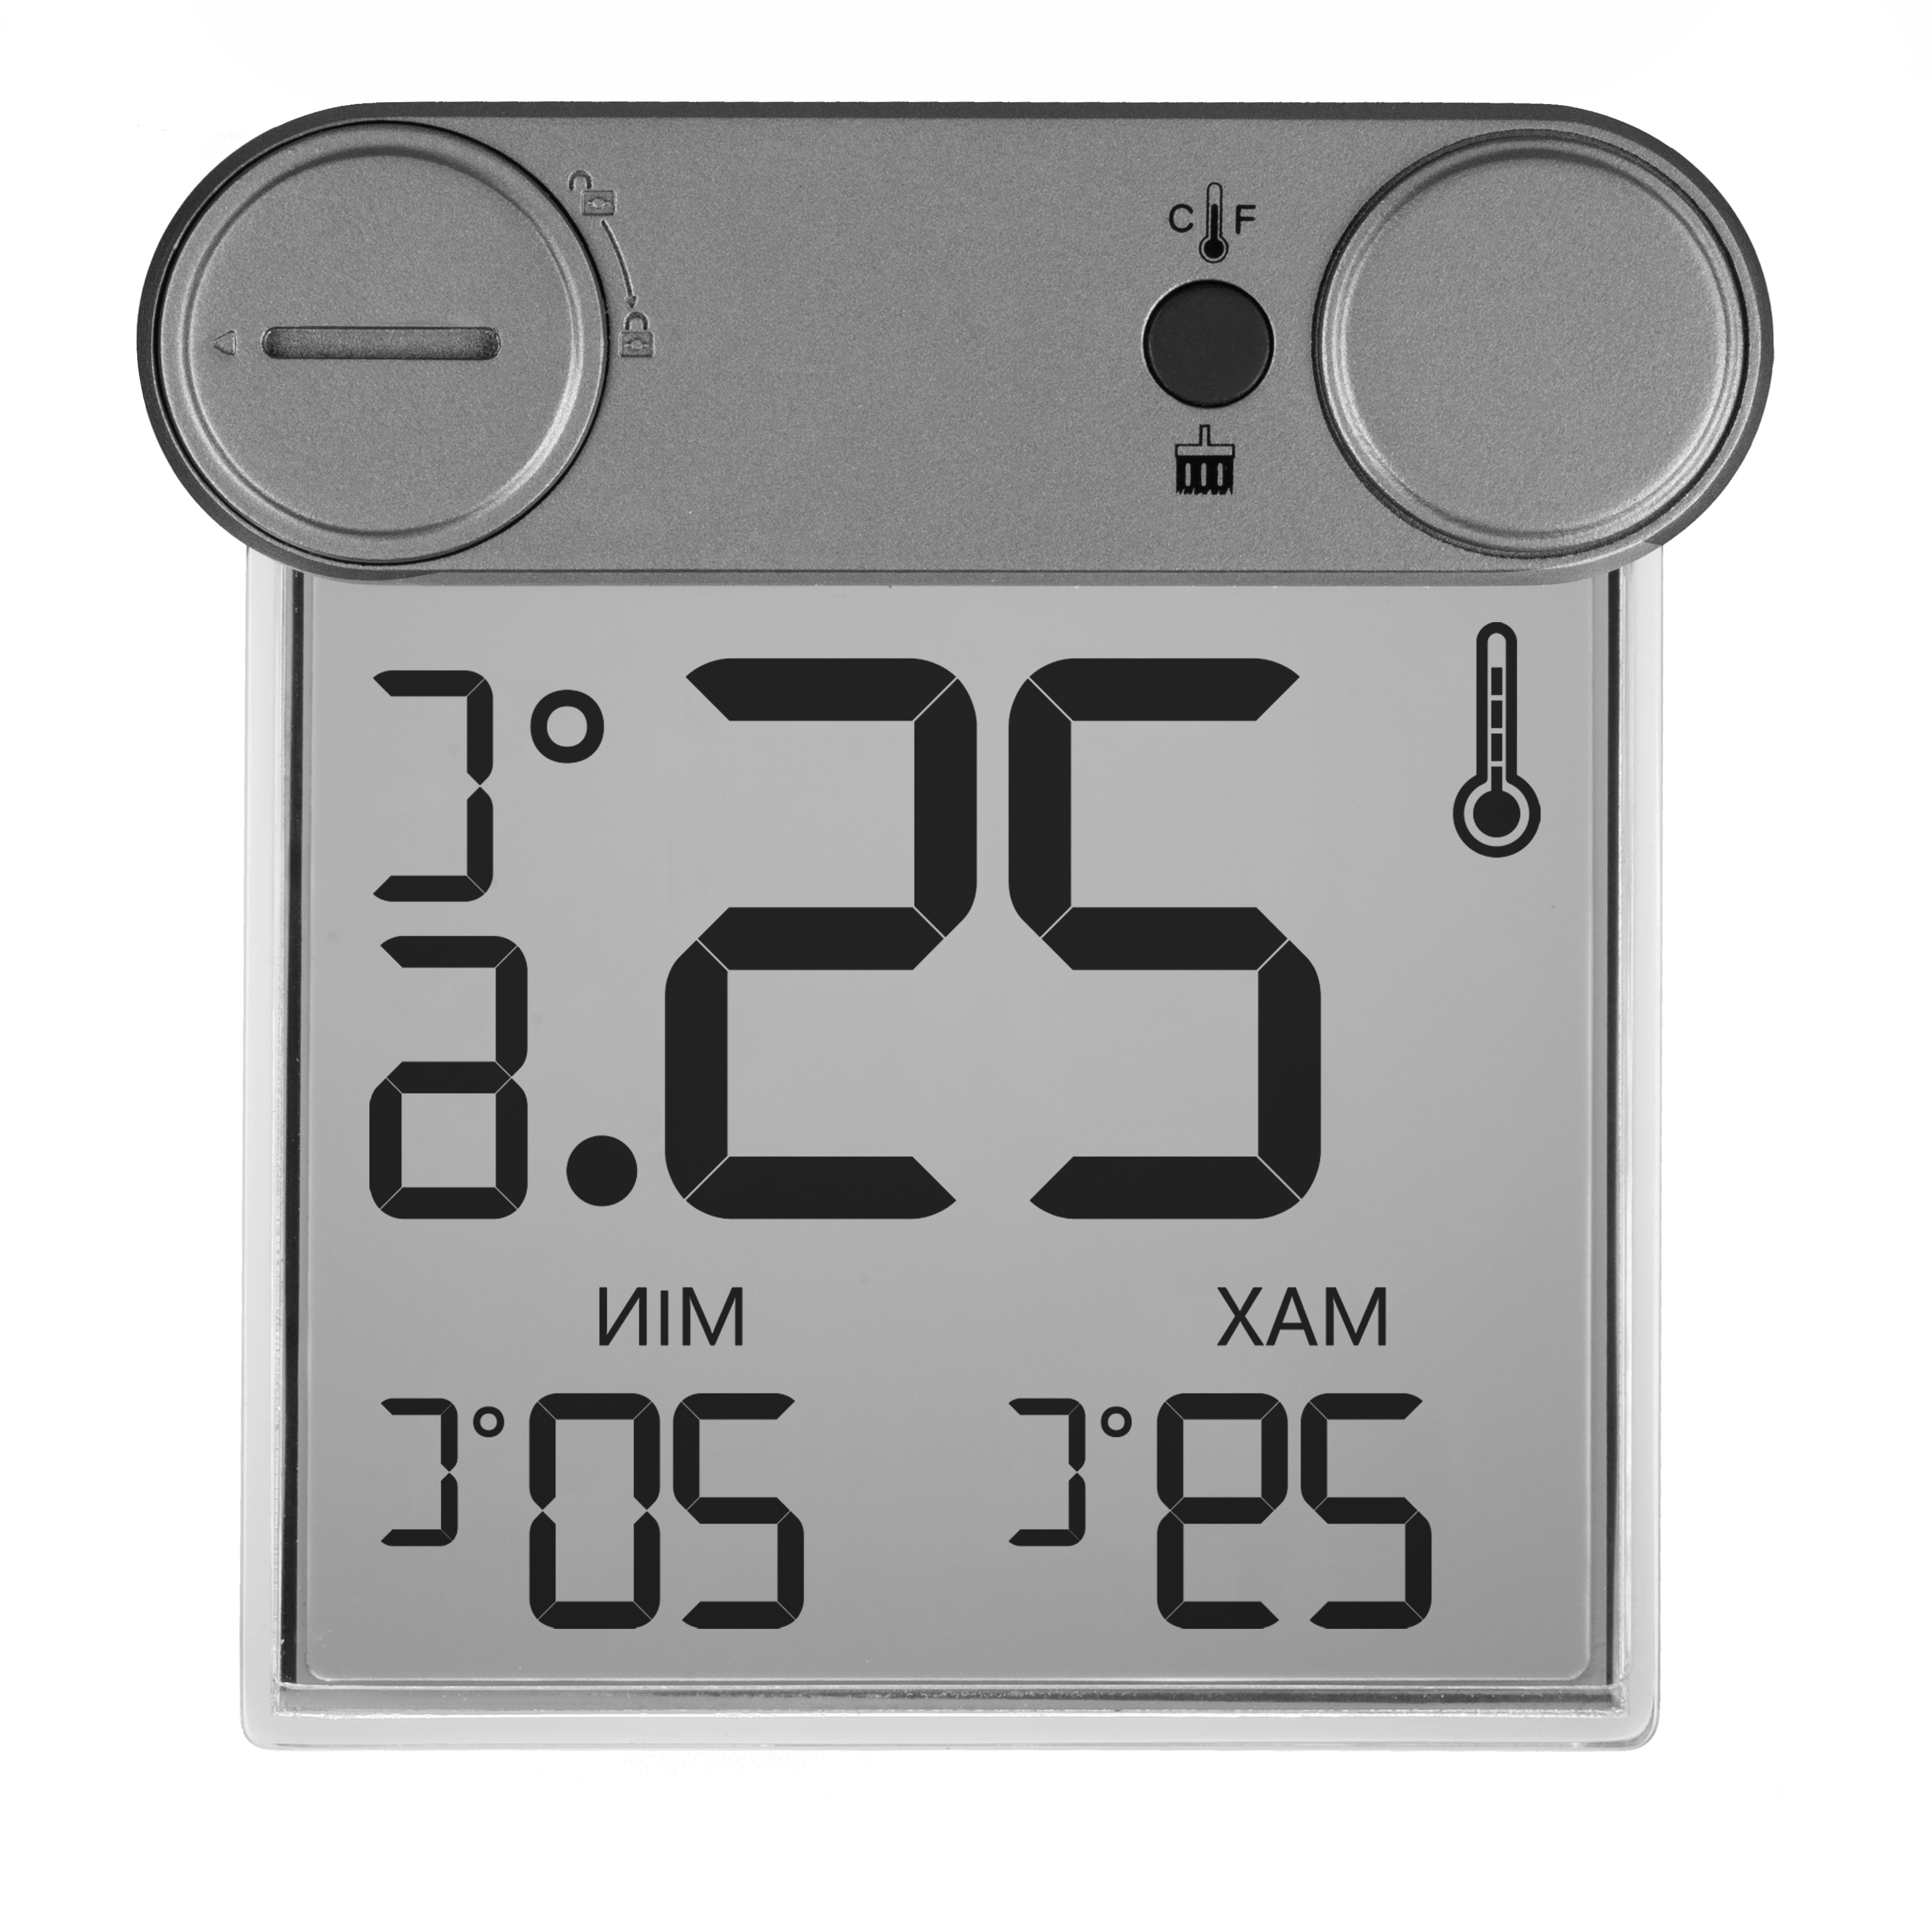 BRESSER Window Thermometer Translucidus WT